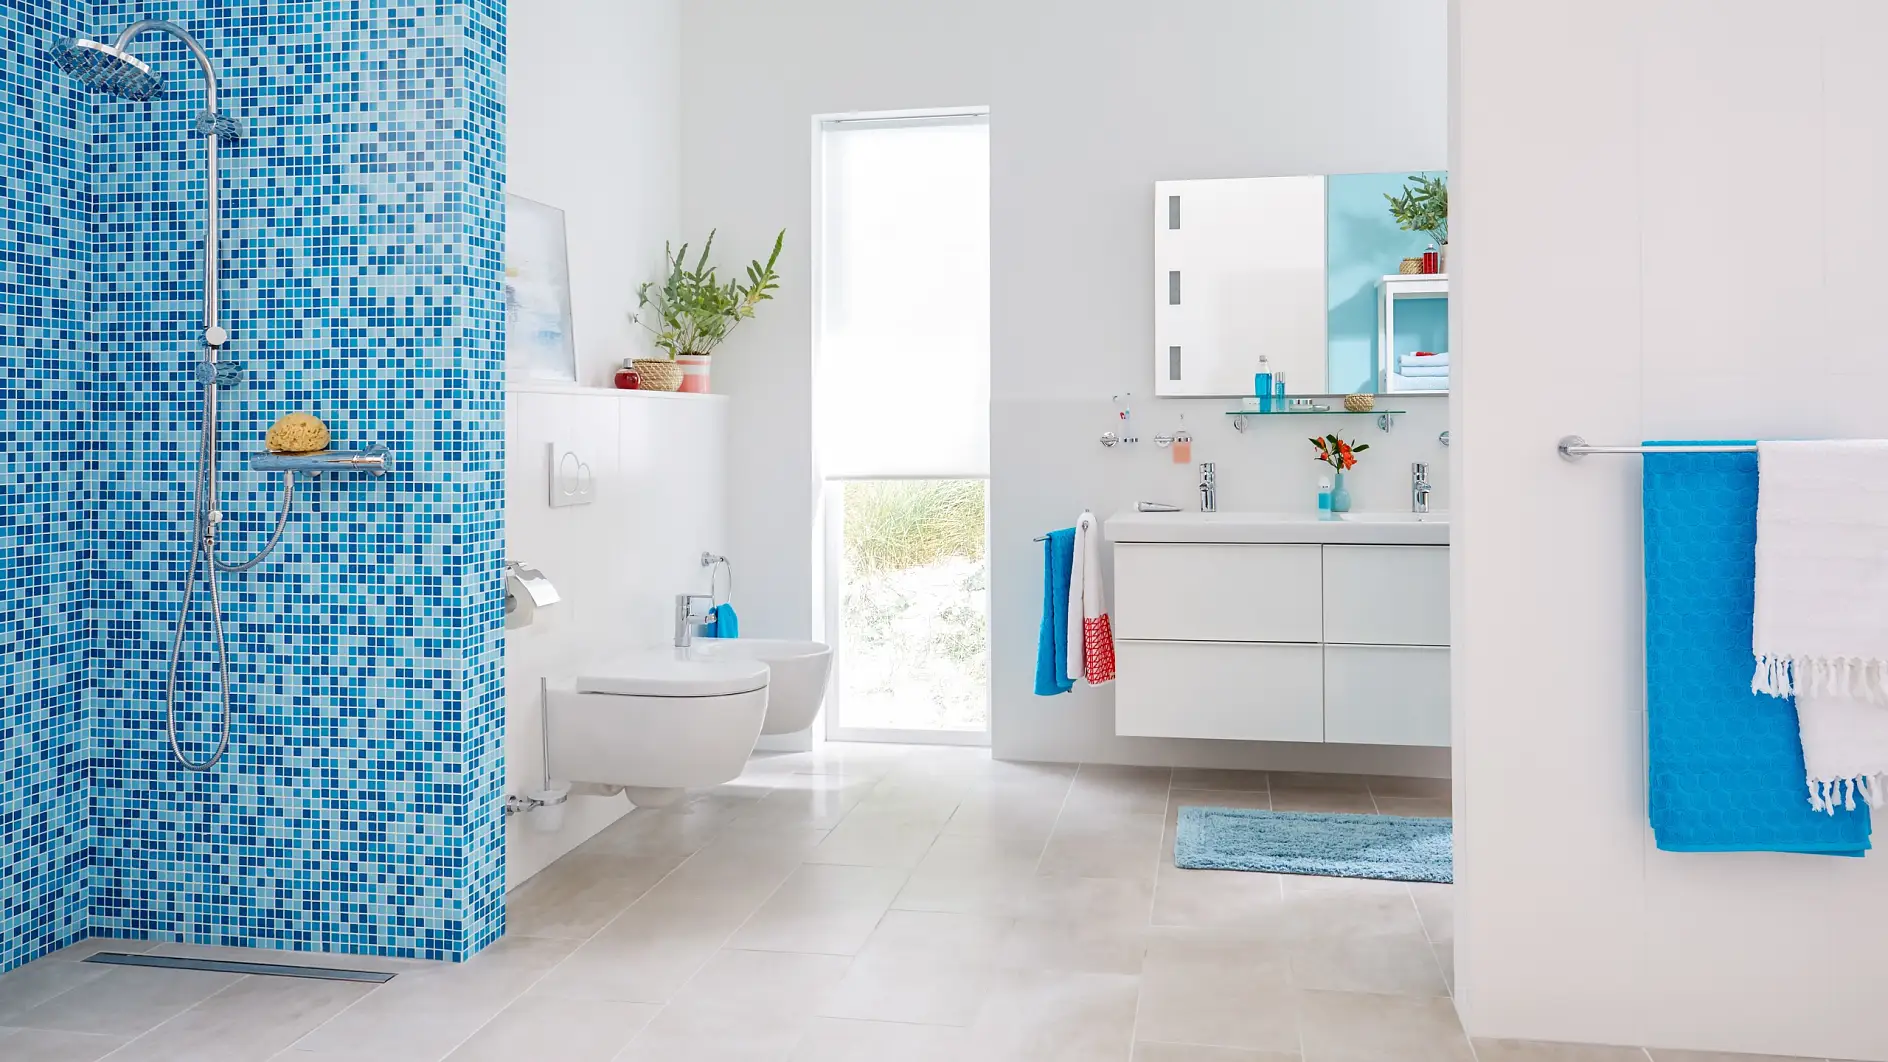 Un design fonctionnel pour une touche de simplicité dans votre salle de bains.